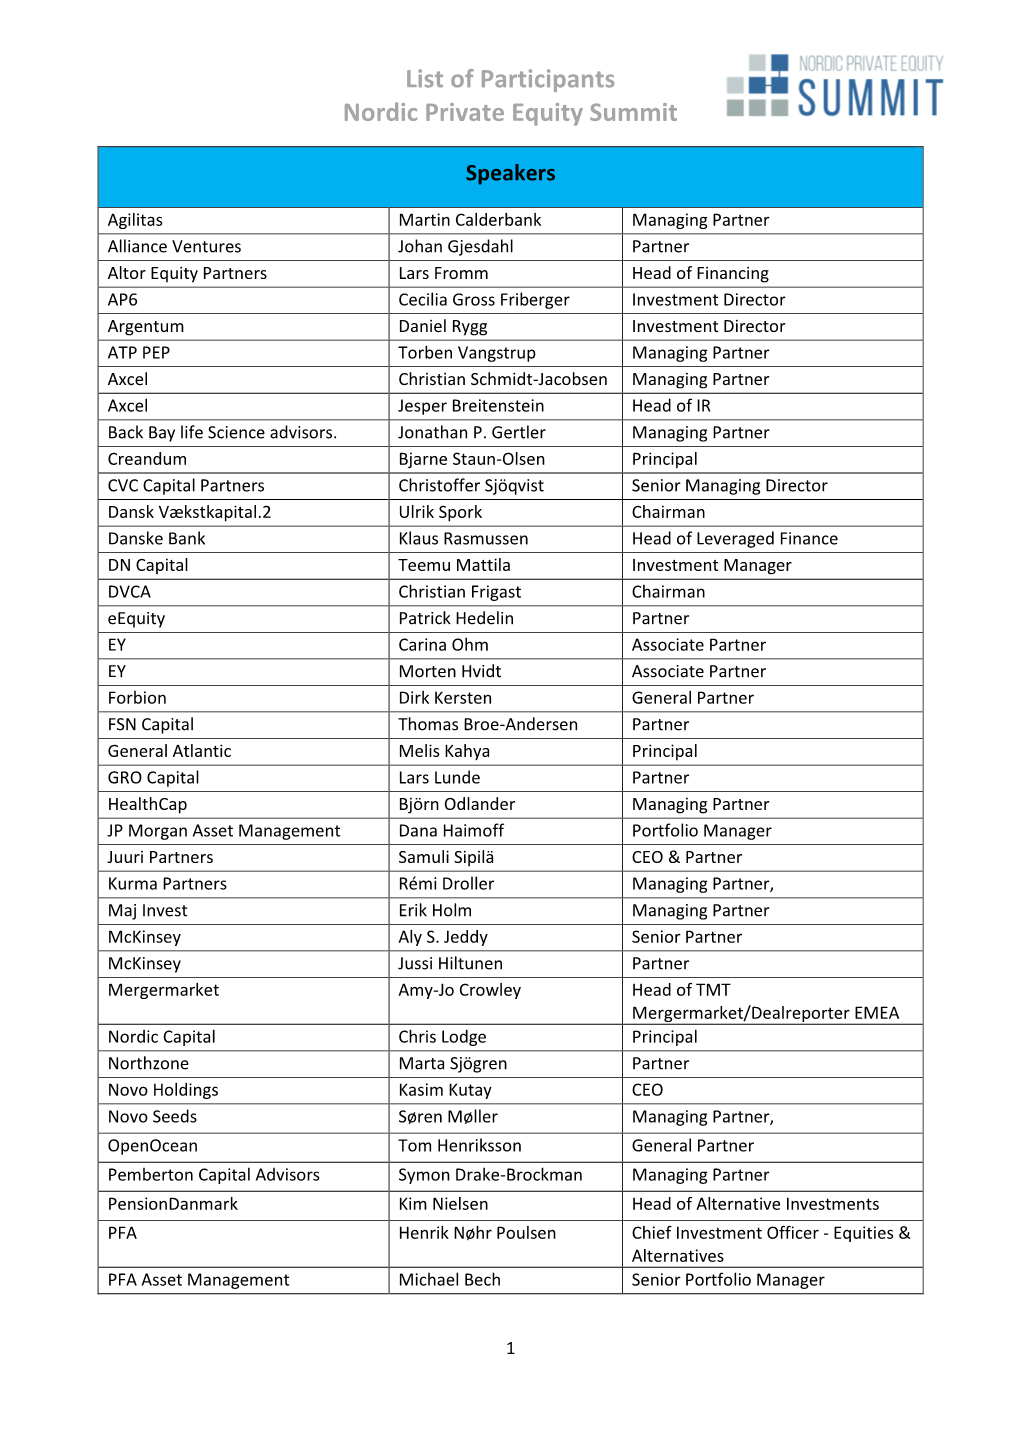 List of Participants NPES 2019